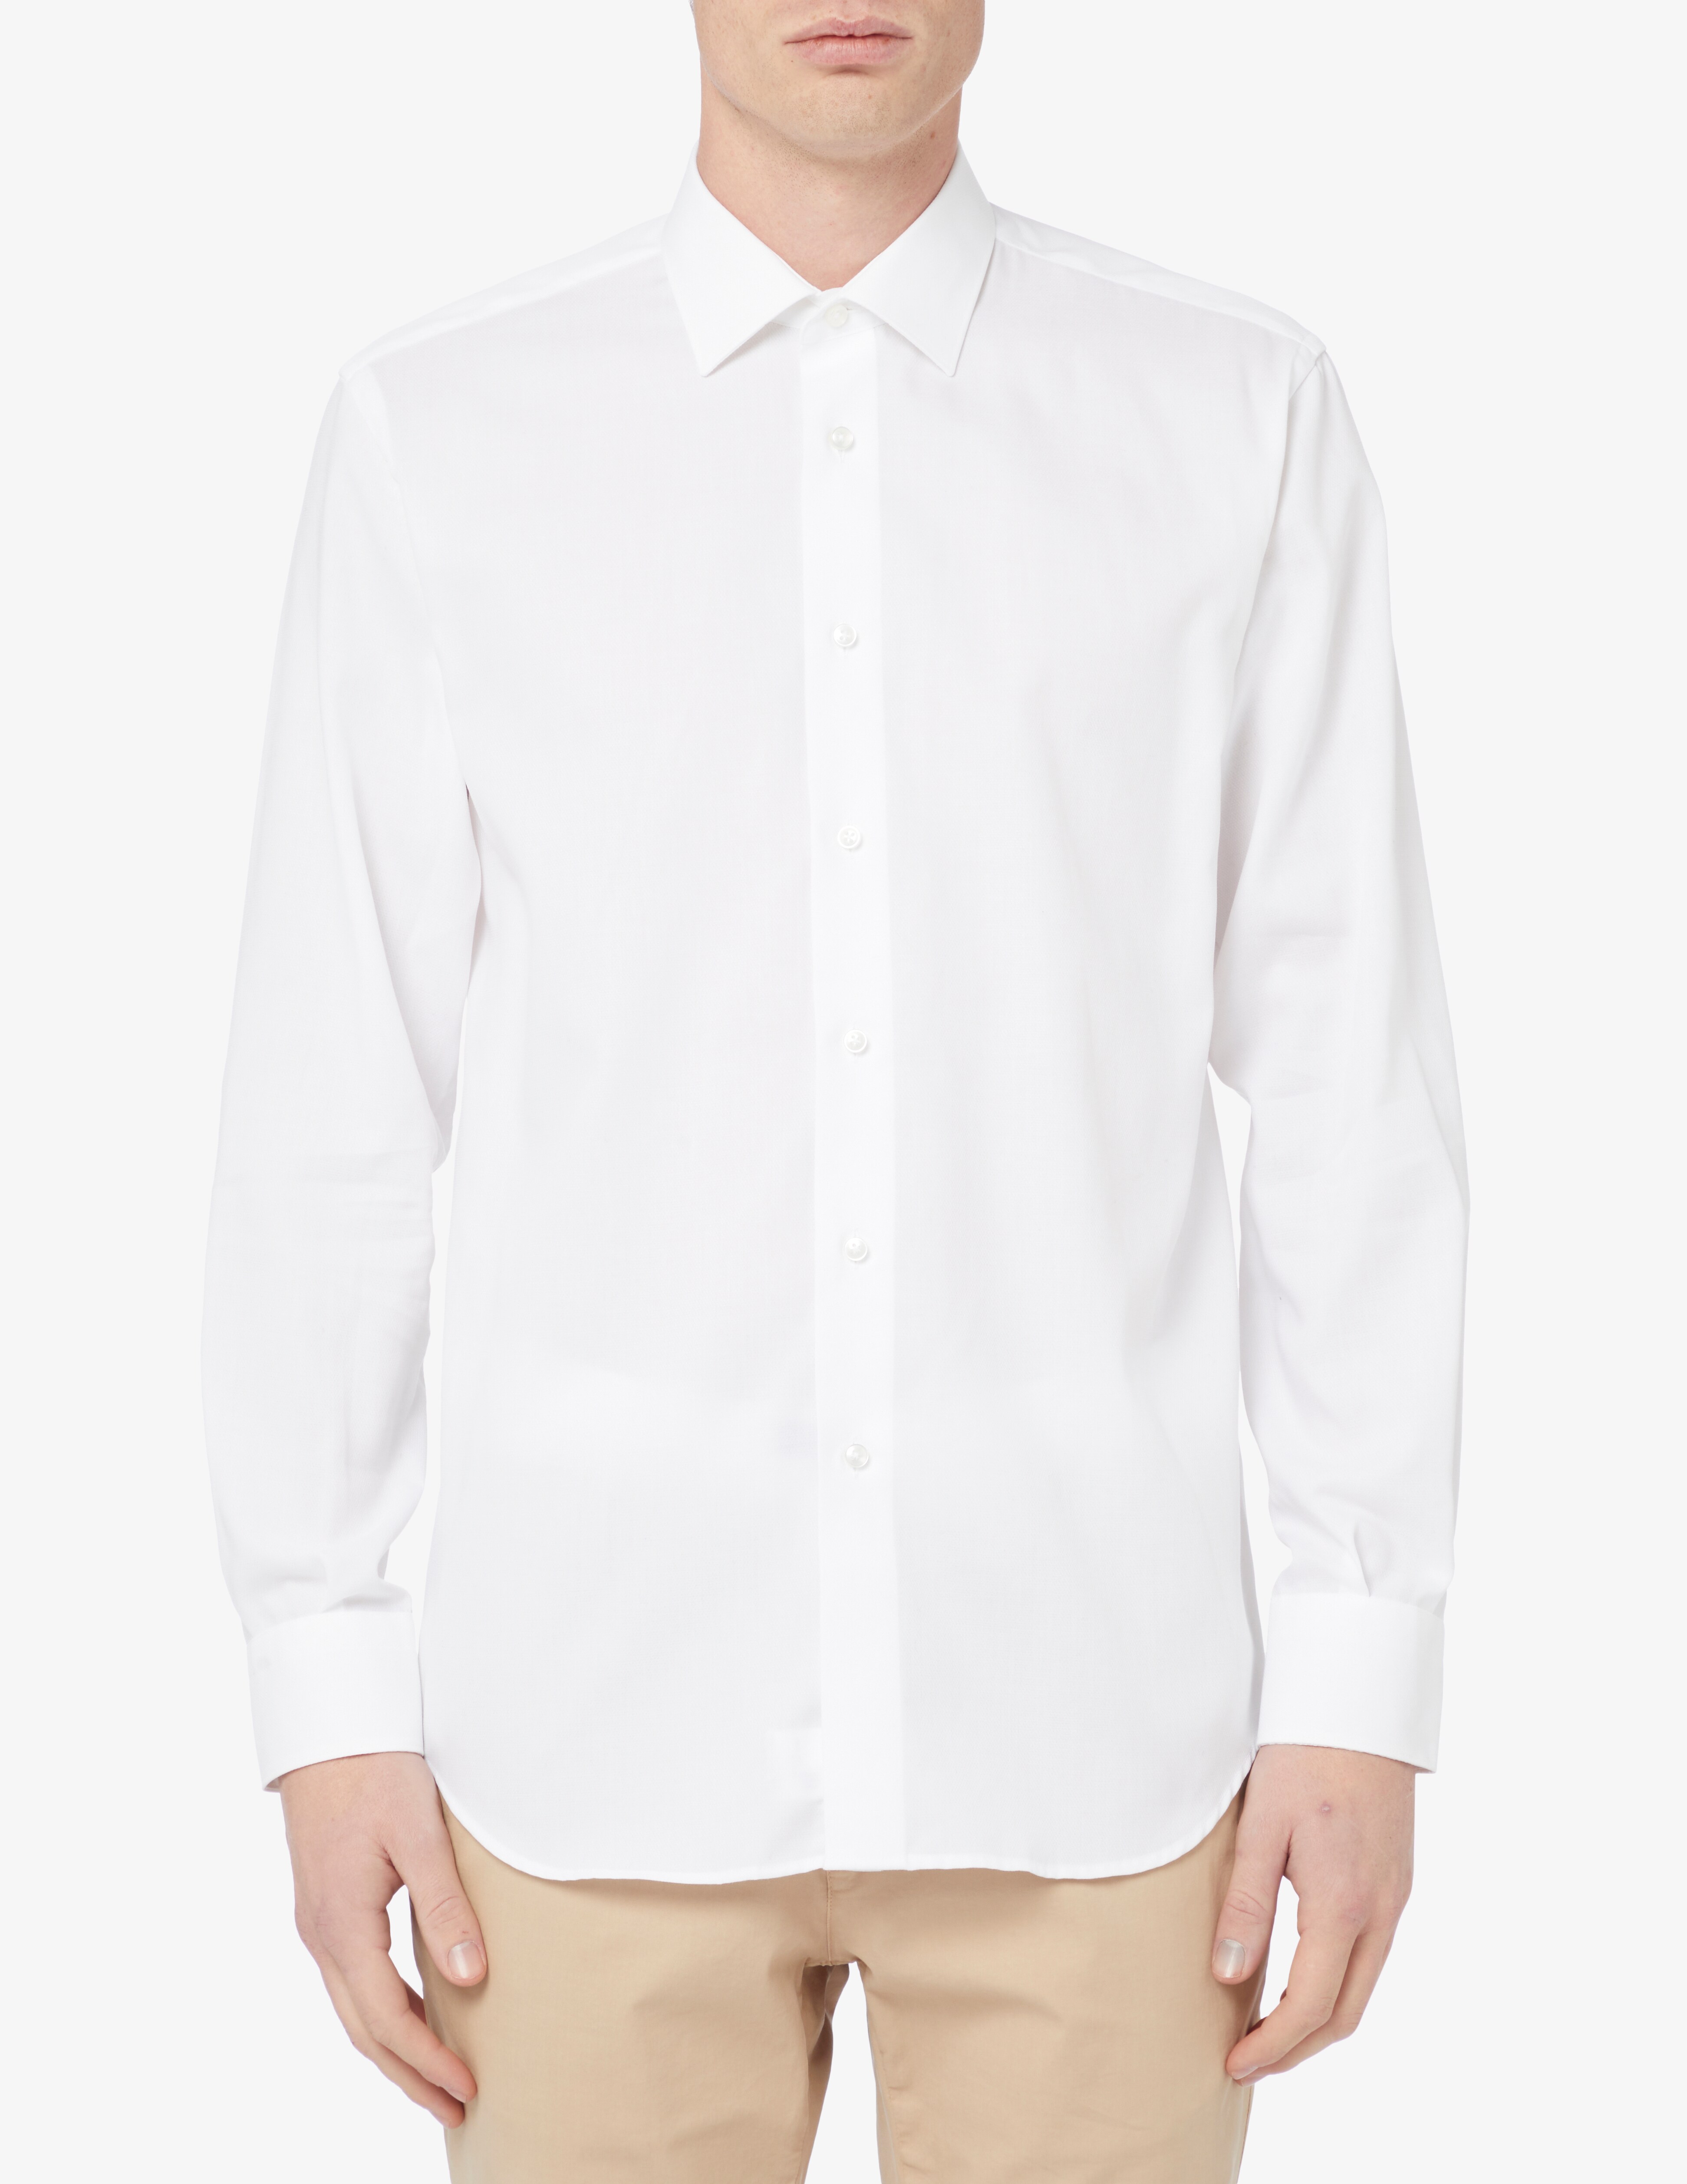 Рубашка обычная, без утюга Sartoria Italiana, белый